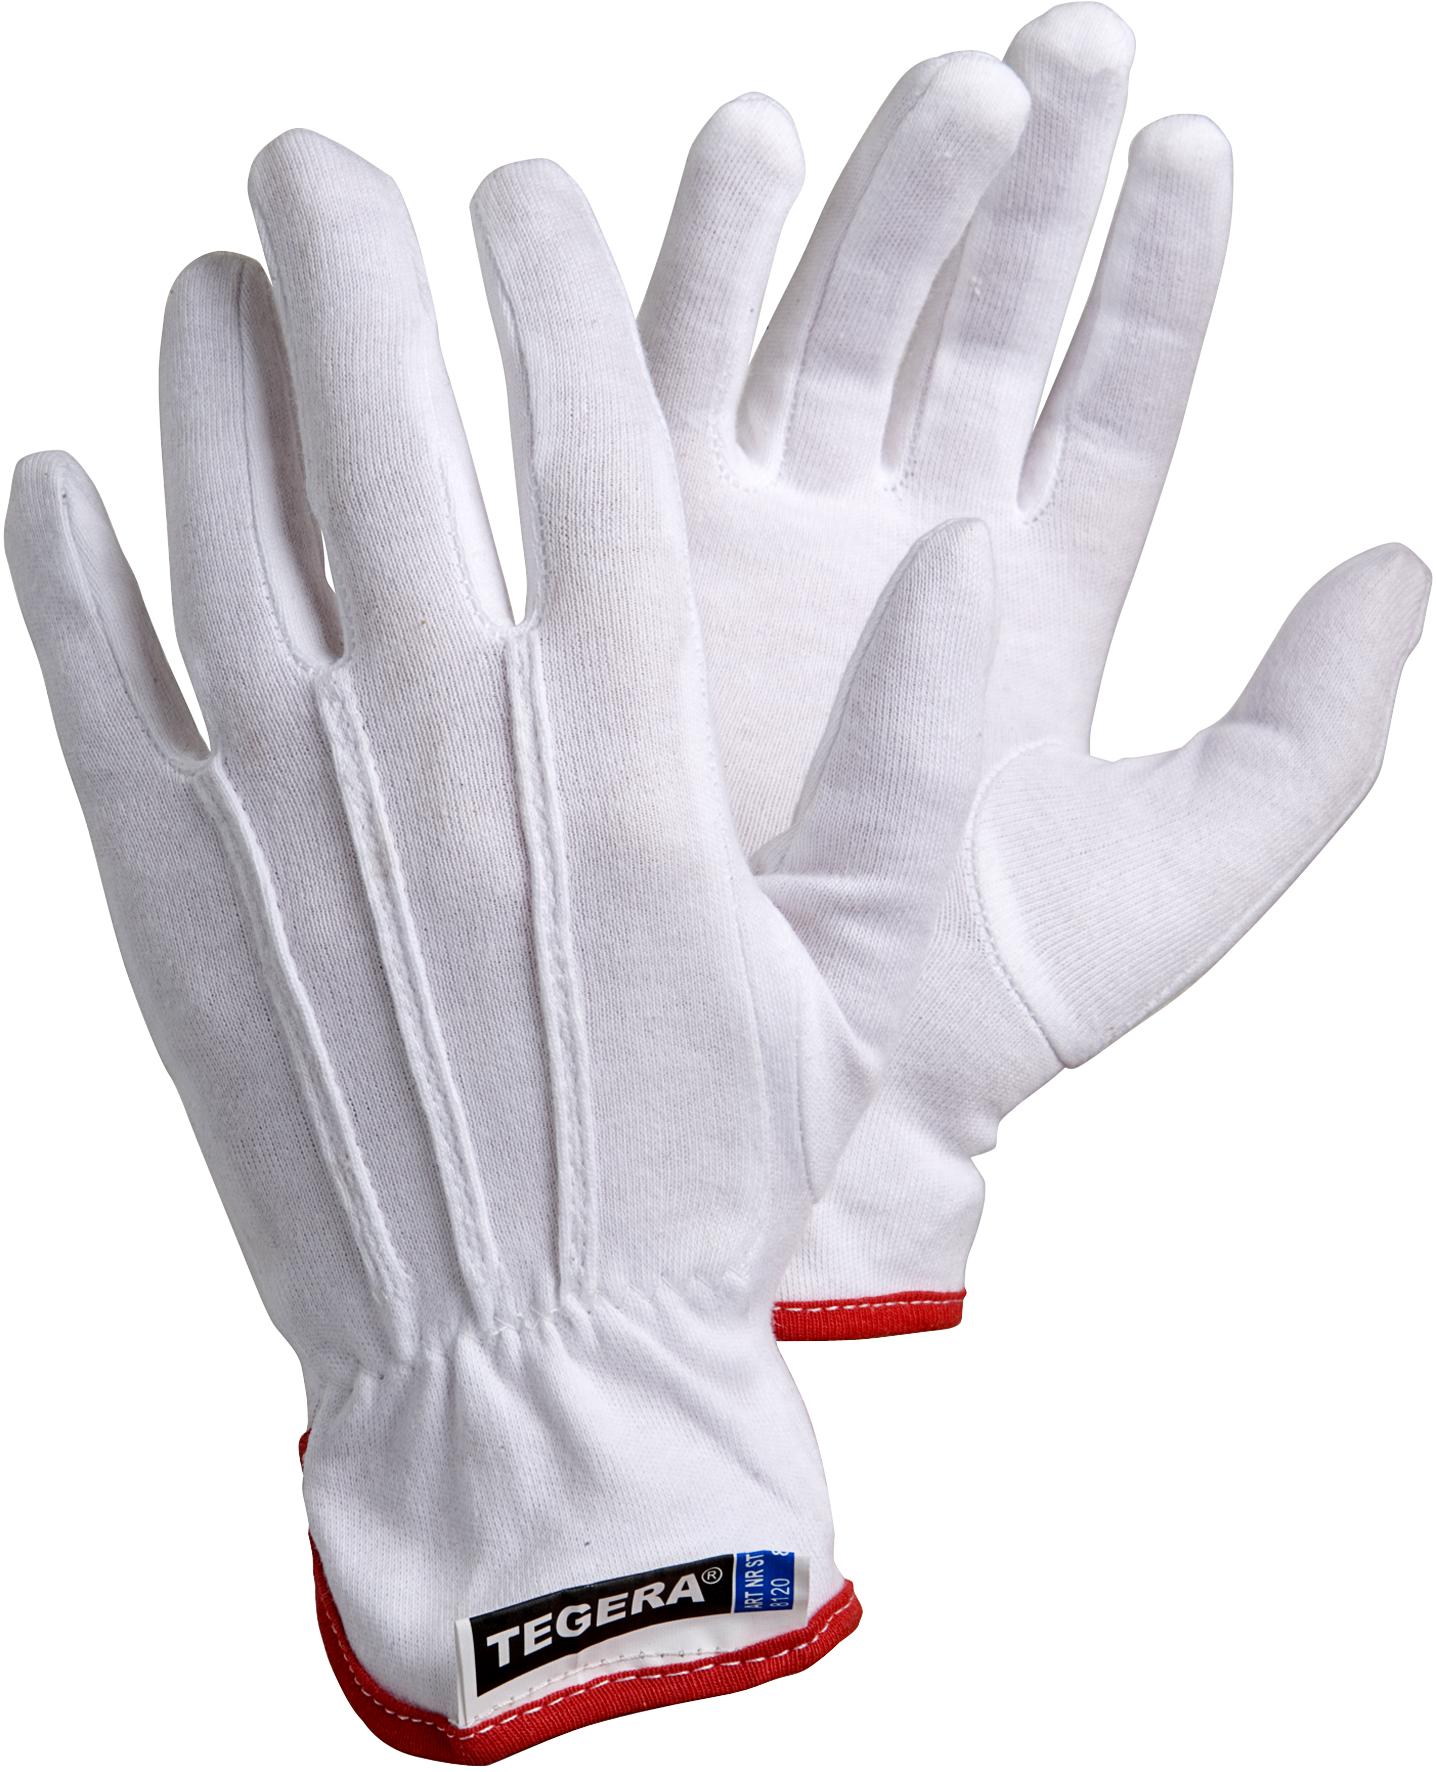 Cotton gloves 7